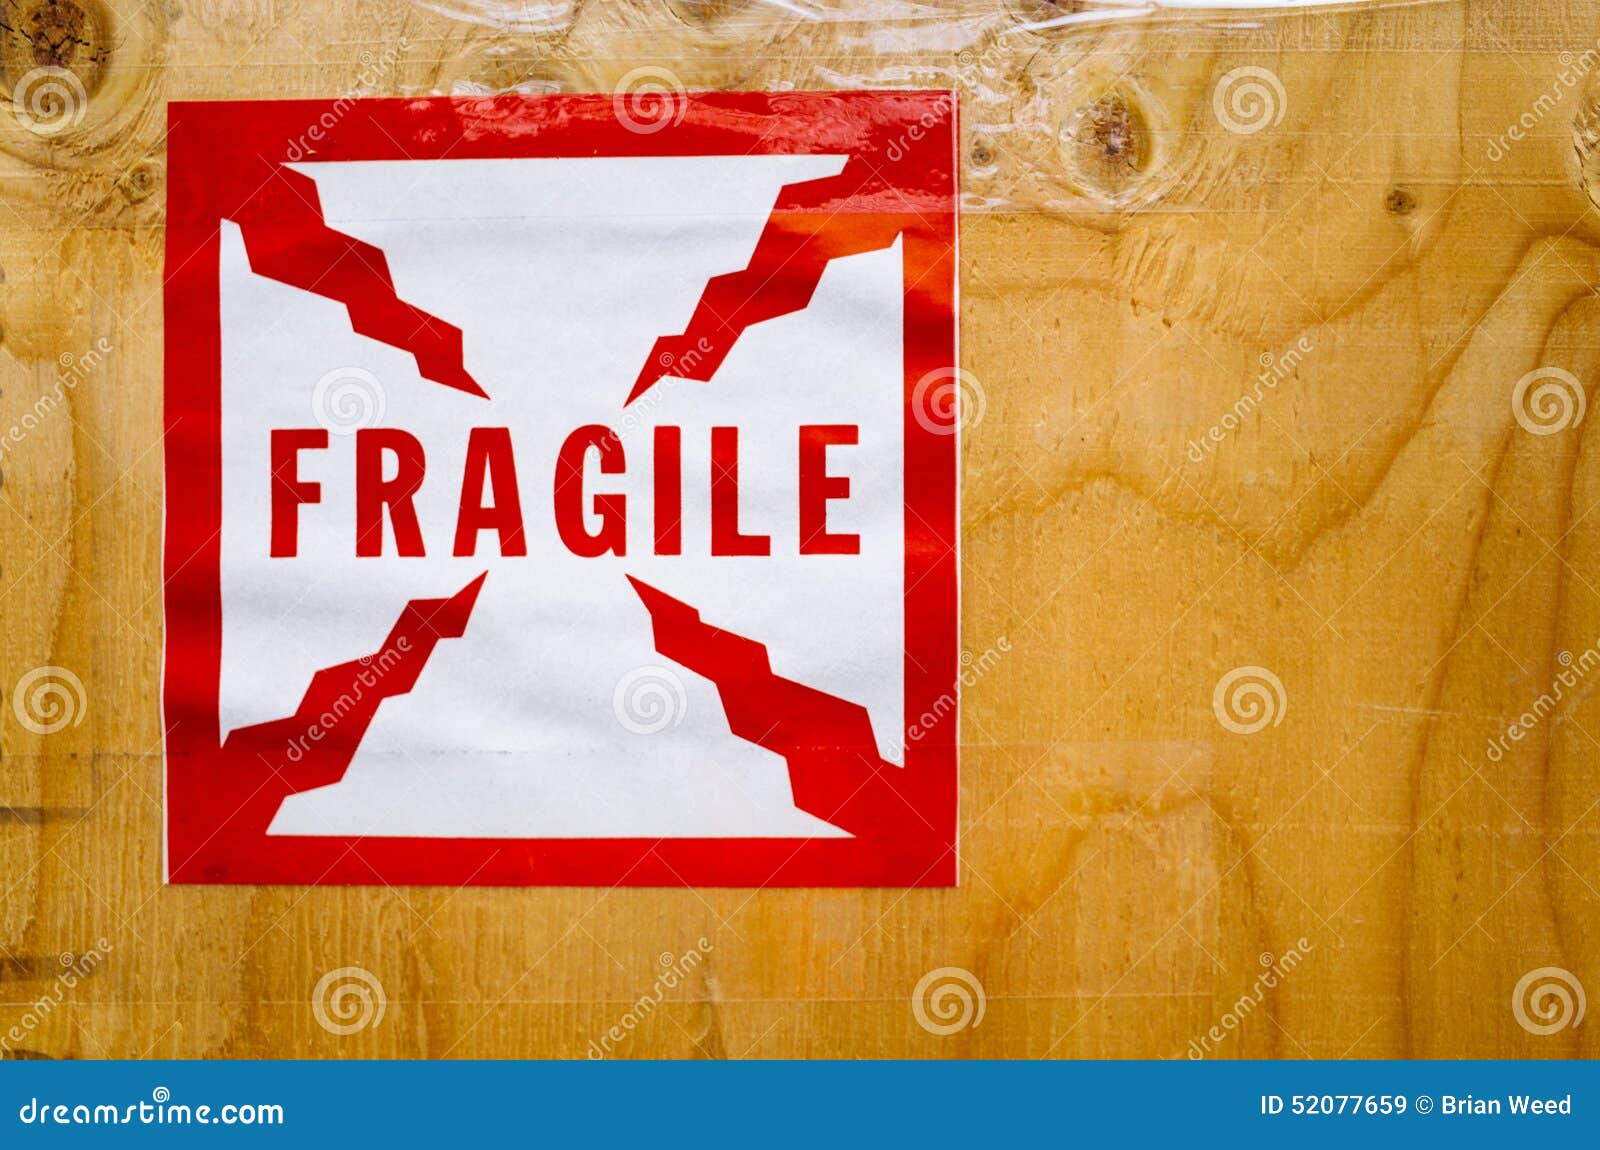 fragile sticker